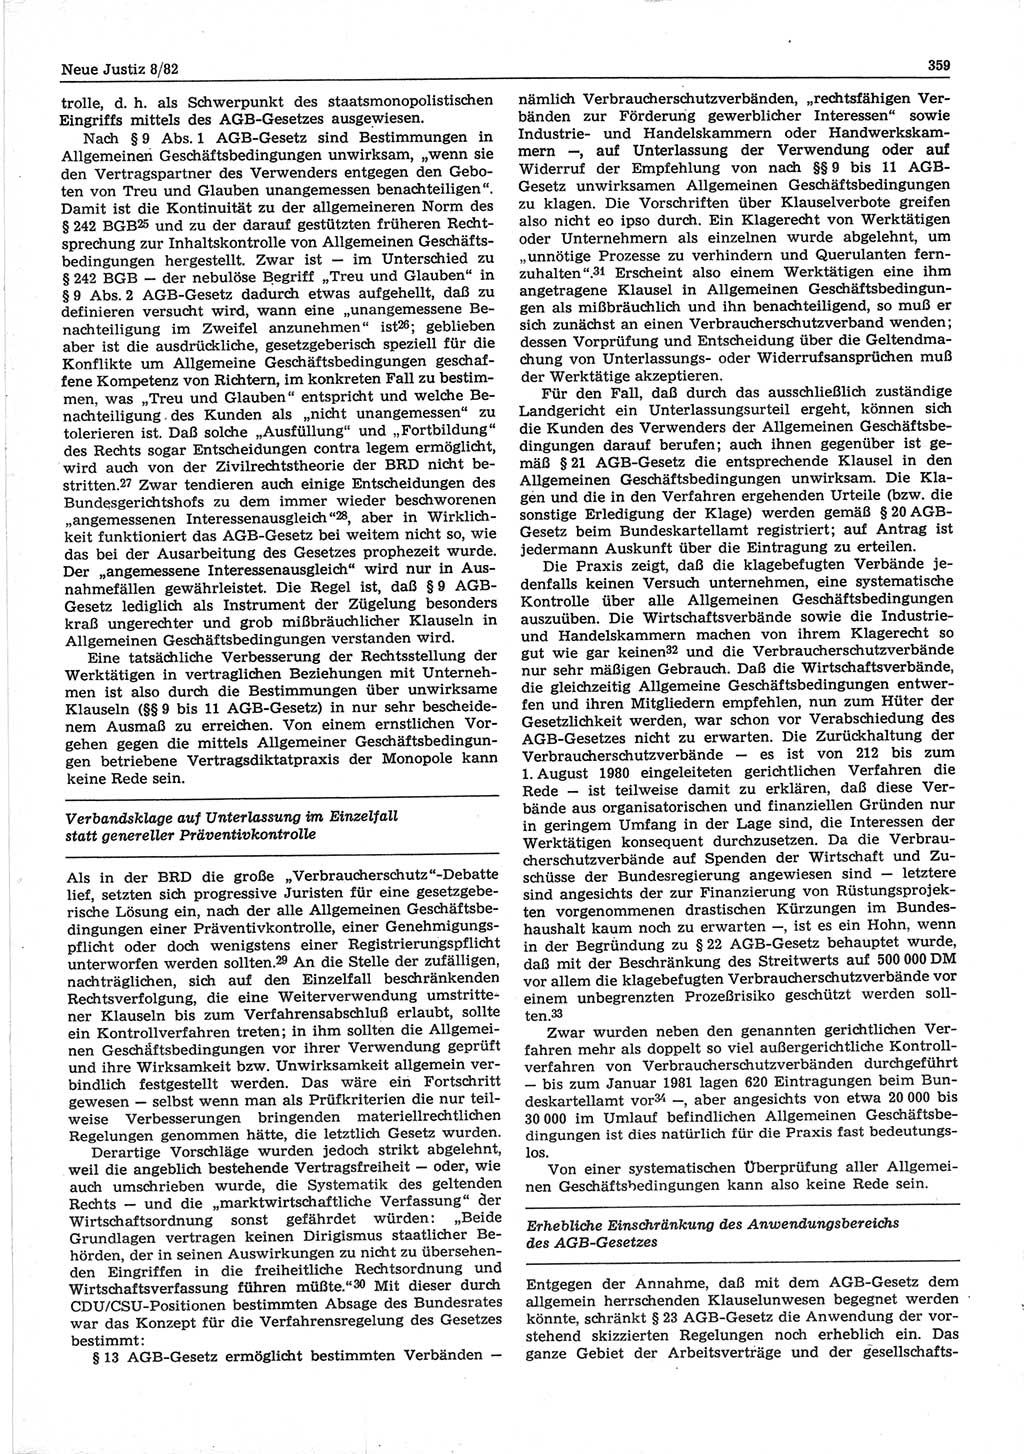 Neue Justiz (NJ), Zeitschrift für sozialistisches Recht und Gesetzlichkeit [Deutsche Demokratische Republik (DDR)], 36. Jahrgang 1982, Seite 359 (NJ DDR 1982, S. 359)